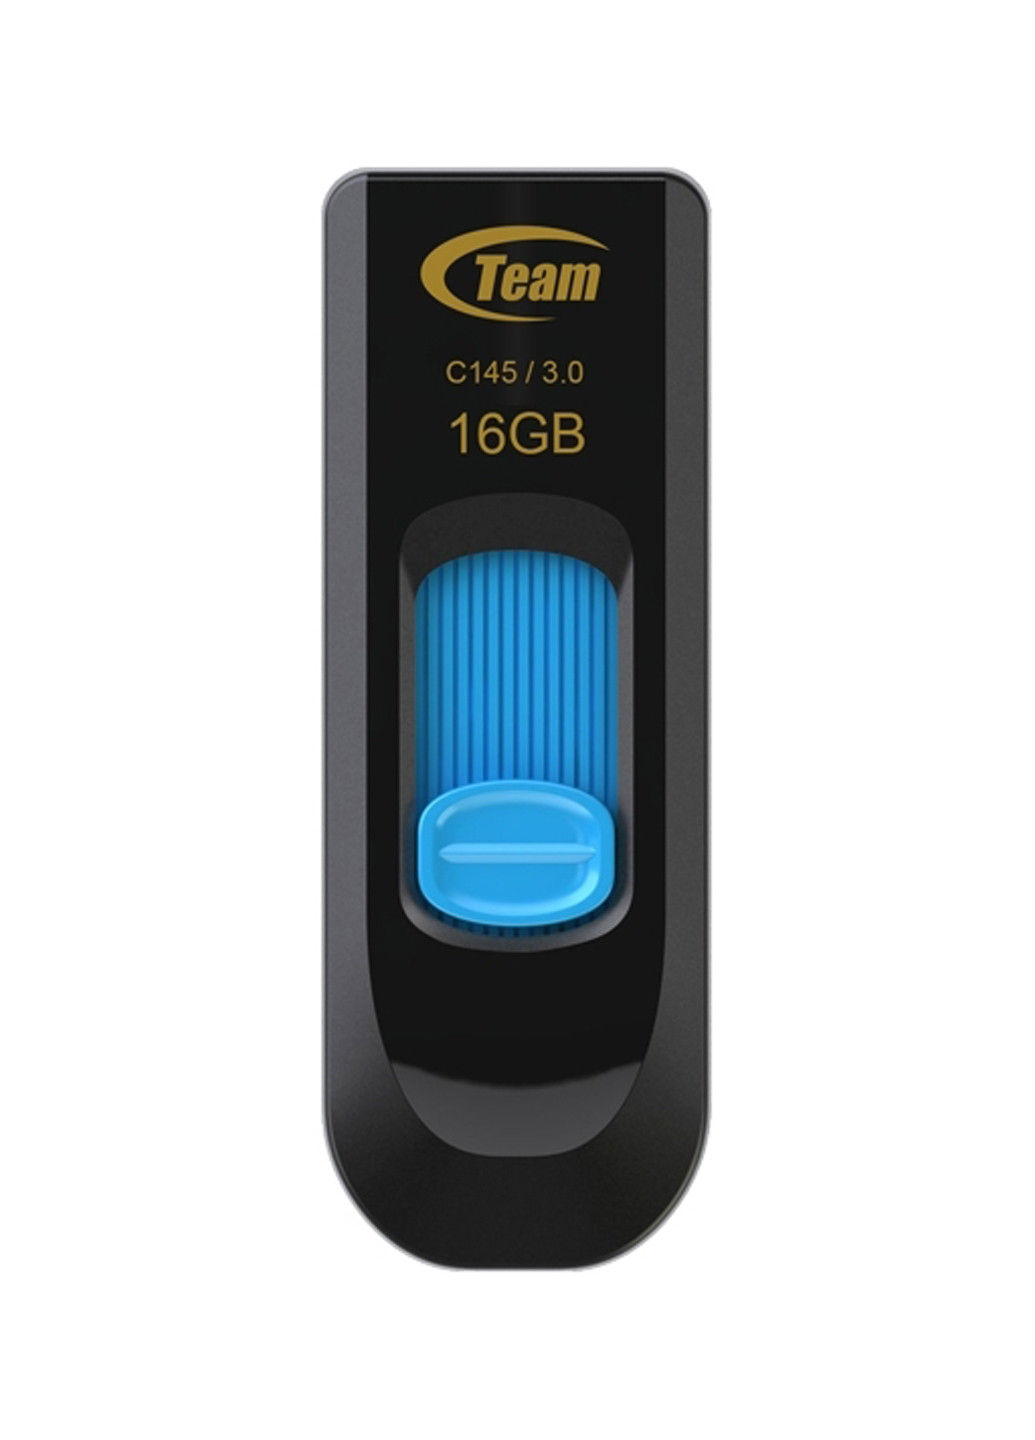 Флеш пам'ять USB C145 16GB Blue (TC145316GL01) Team флеш память usb team c145 16gb blue (tc145316gl01) (134201644)